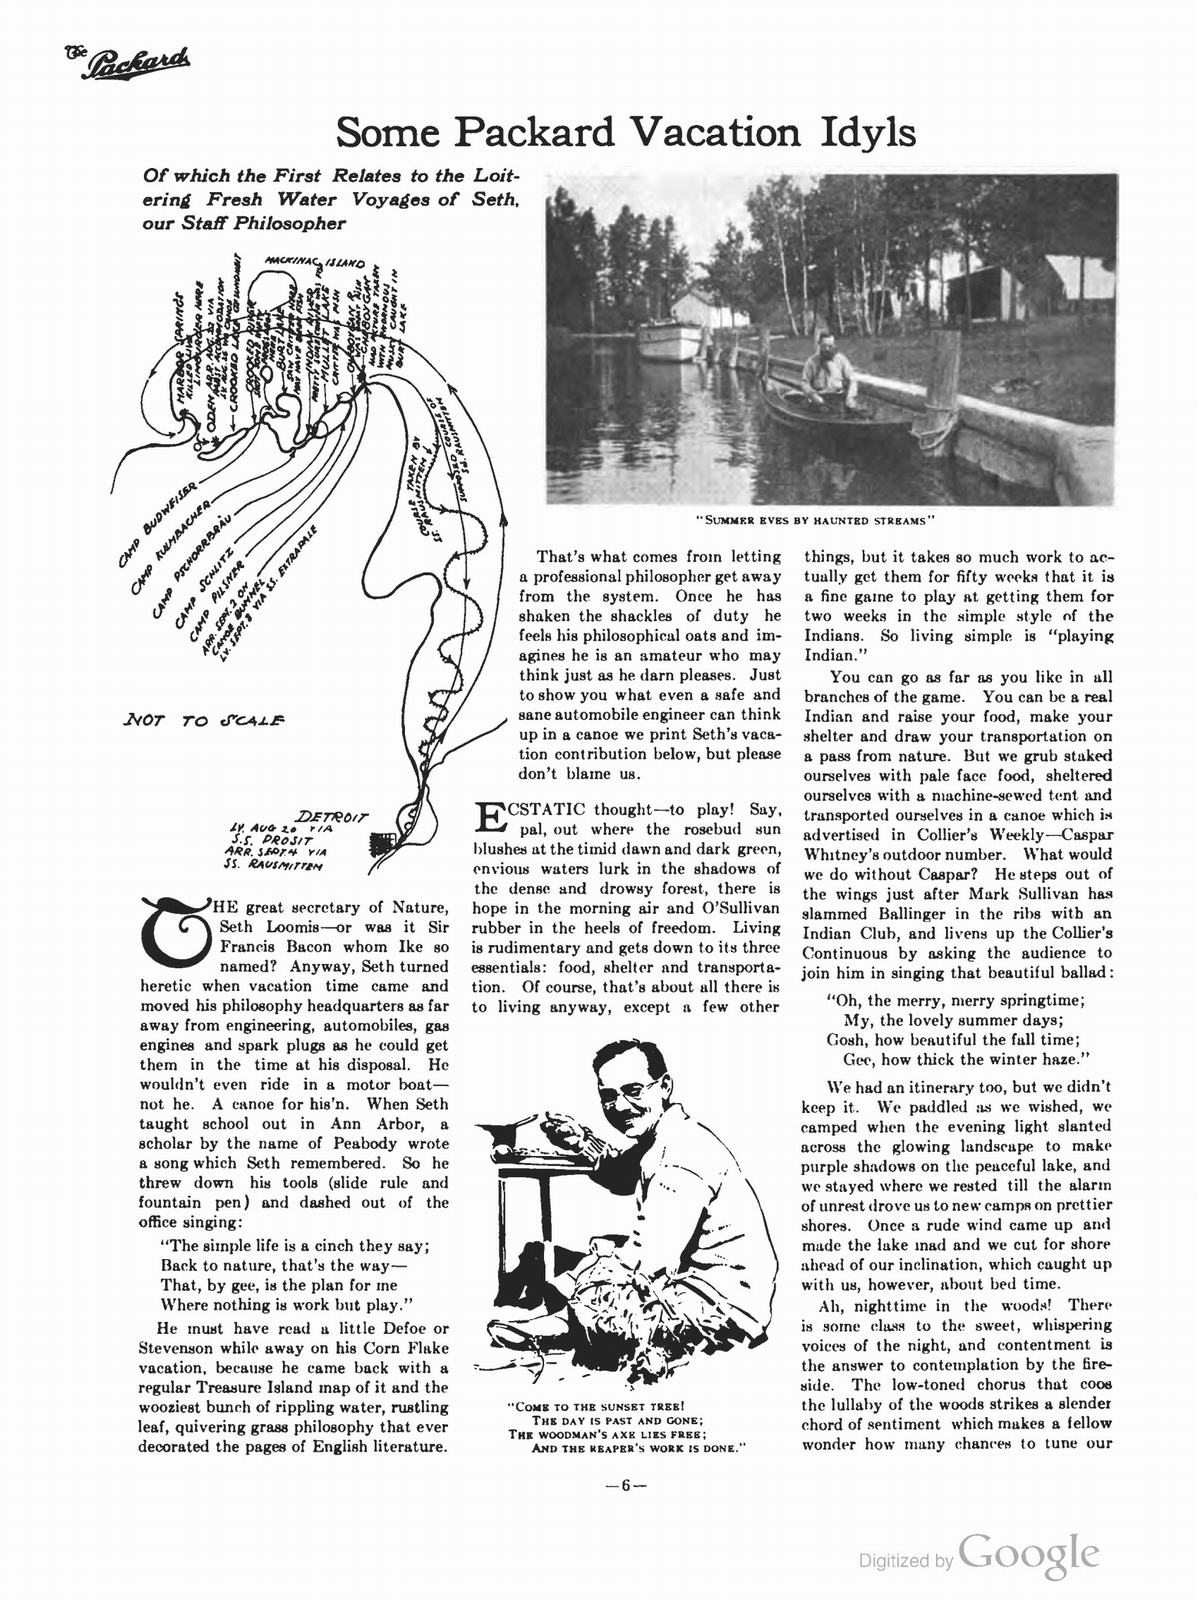 n_1910 'The Packard' Newsletter-156.jpg